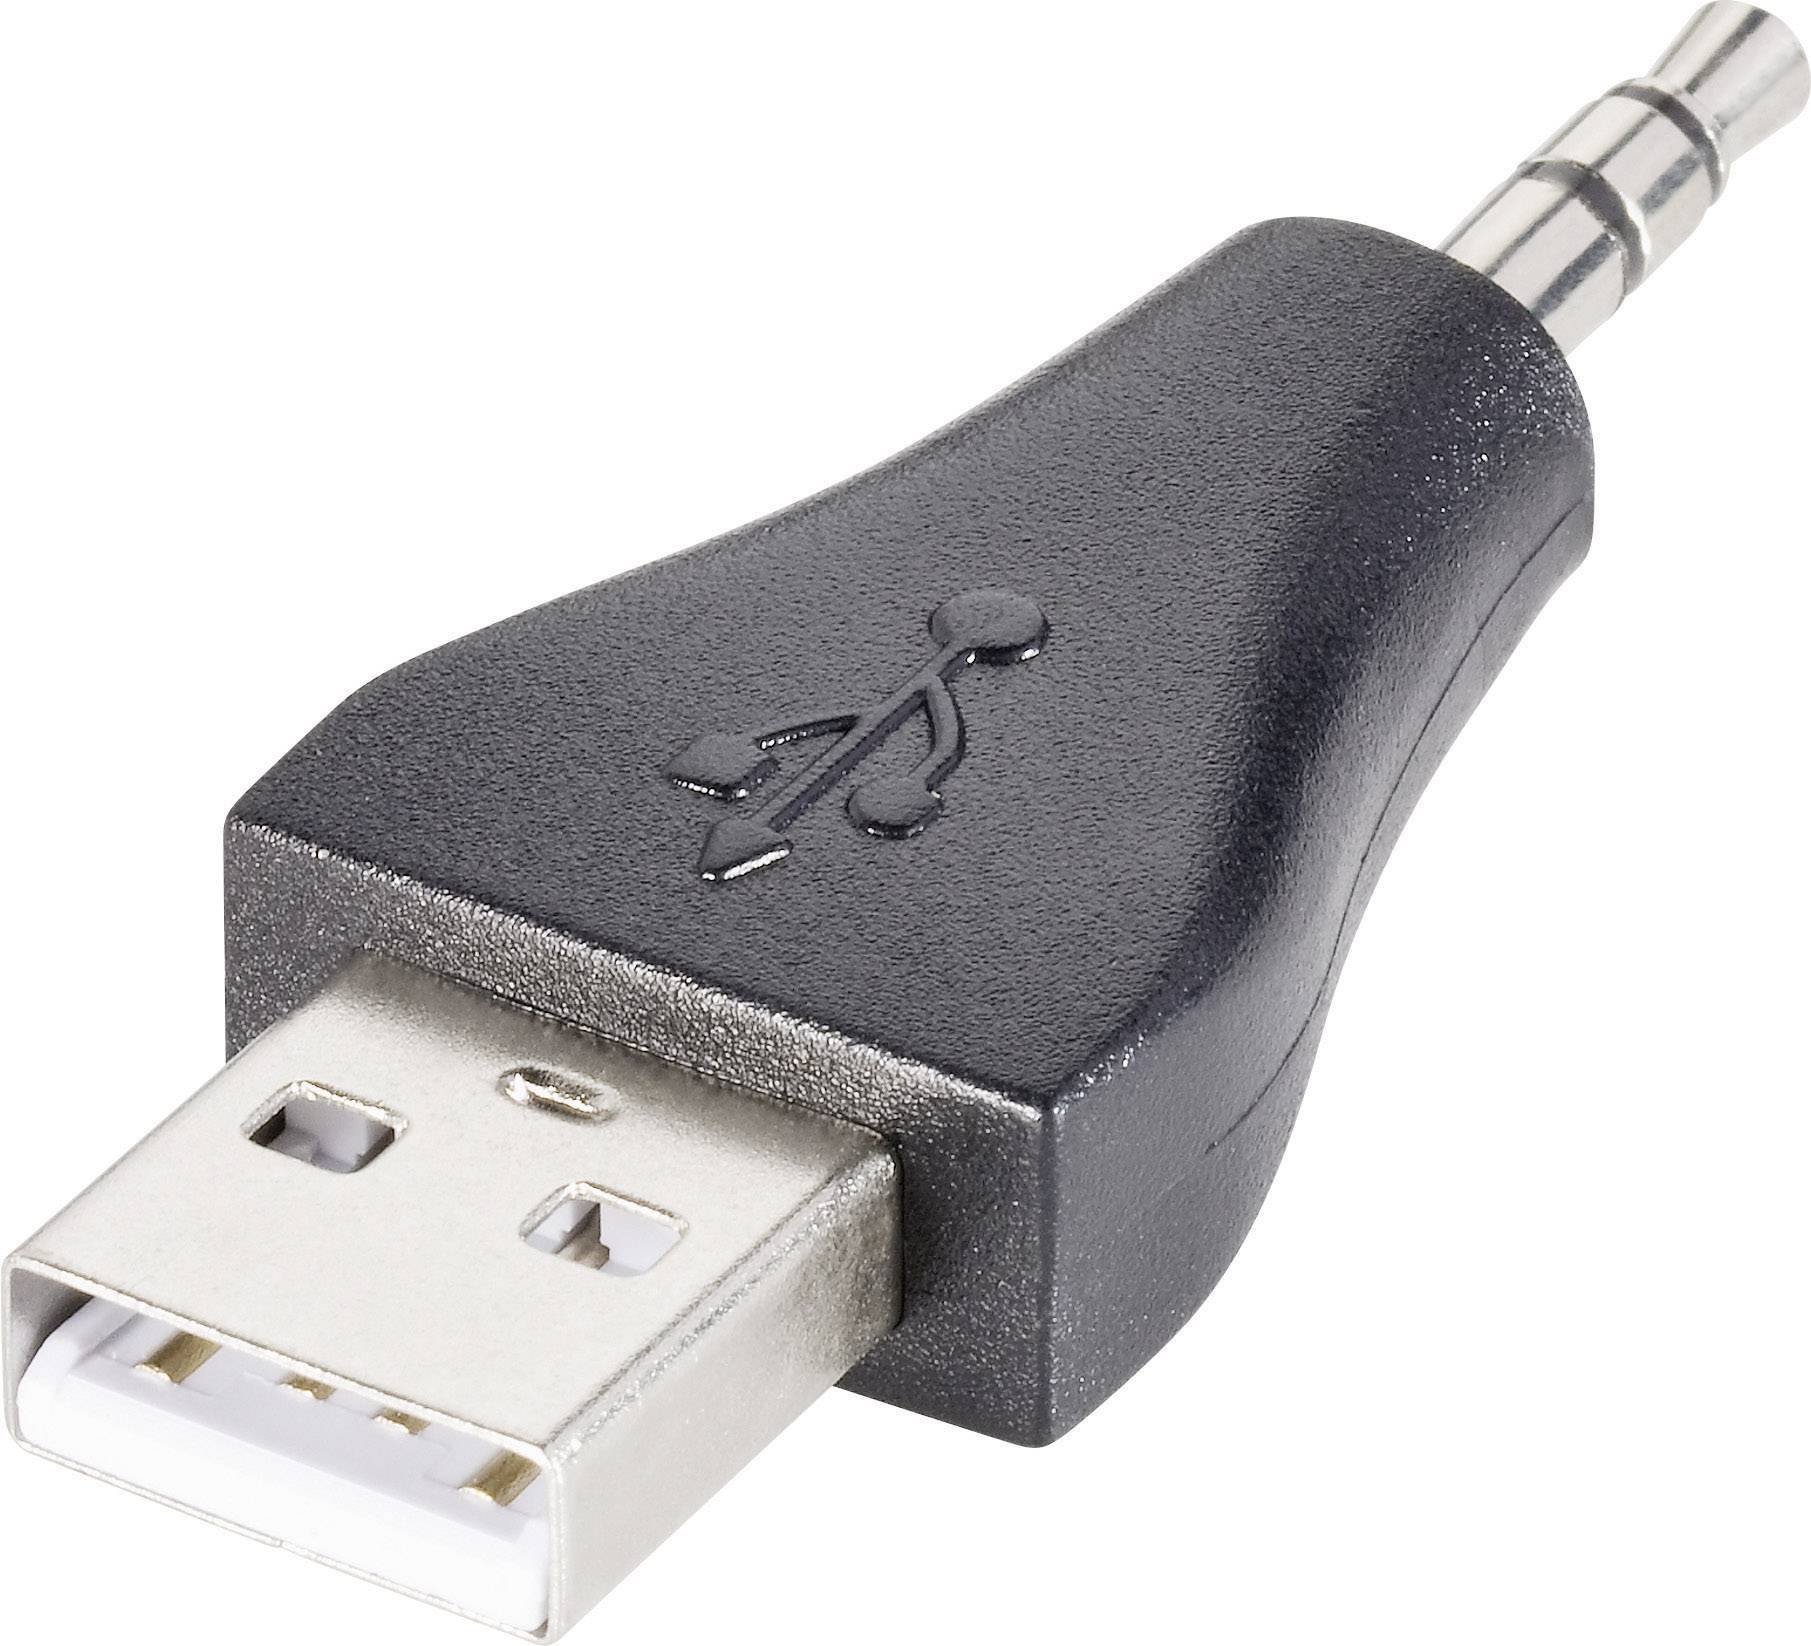 Переходник usb на jack 3.5 для наушников. Адаптер с USB на 3.5 Jack. Переходник USB Jack 3.5mm. Переходник мини USB на Джек 3.5. USB2.0 Audio + USB адаптер 5.5.